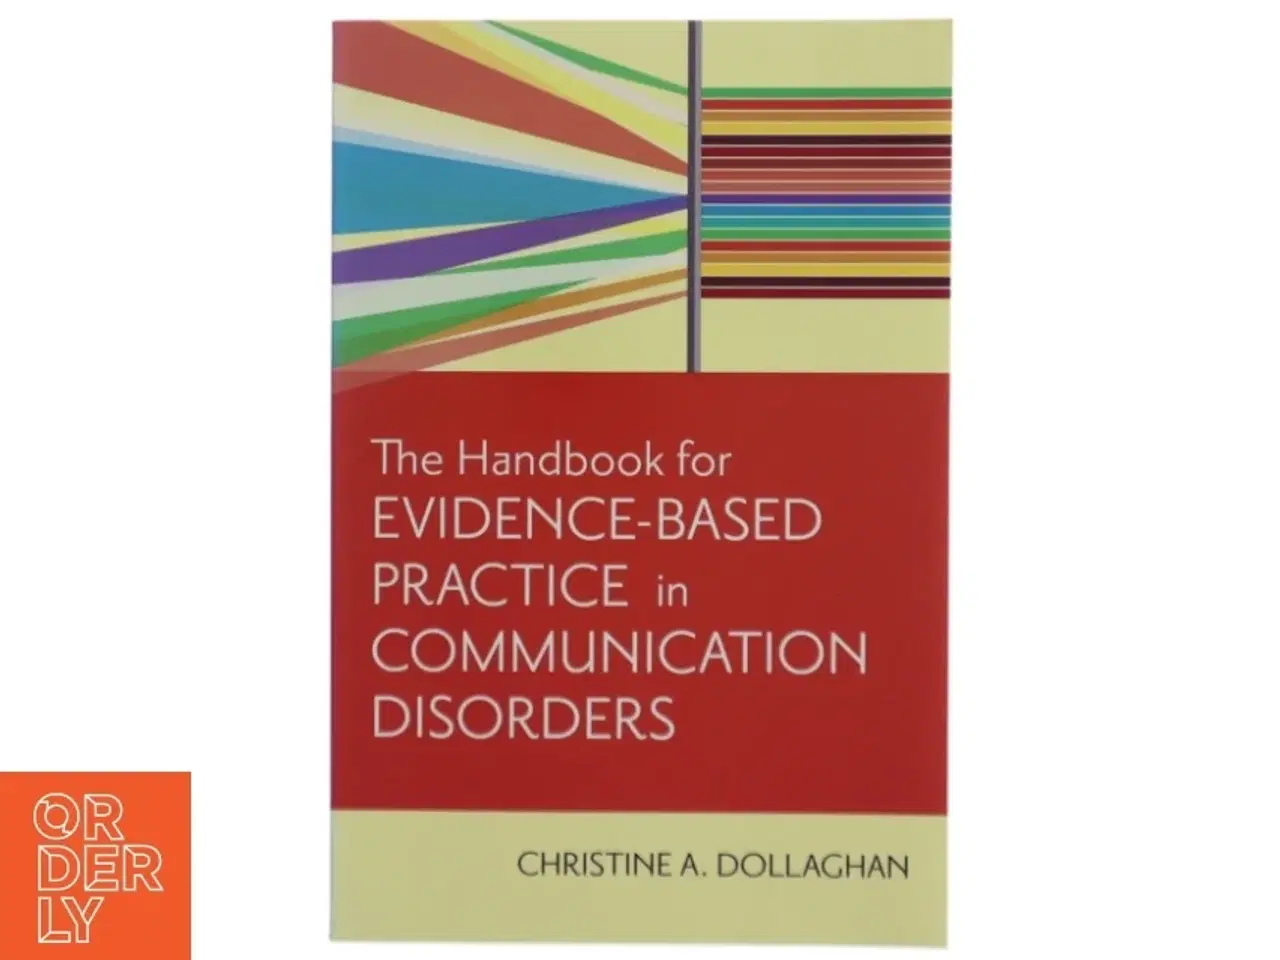 Billede 1 - The handbook for evidence-based practice in communication disorders af Christine A. Dollaghan (Bog)